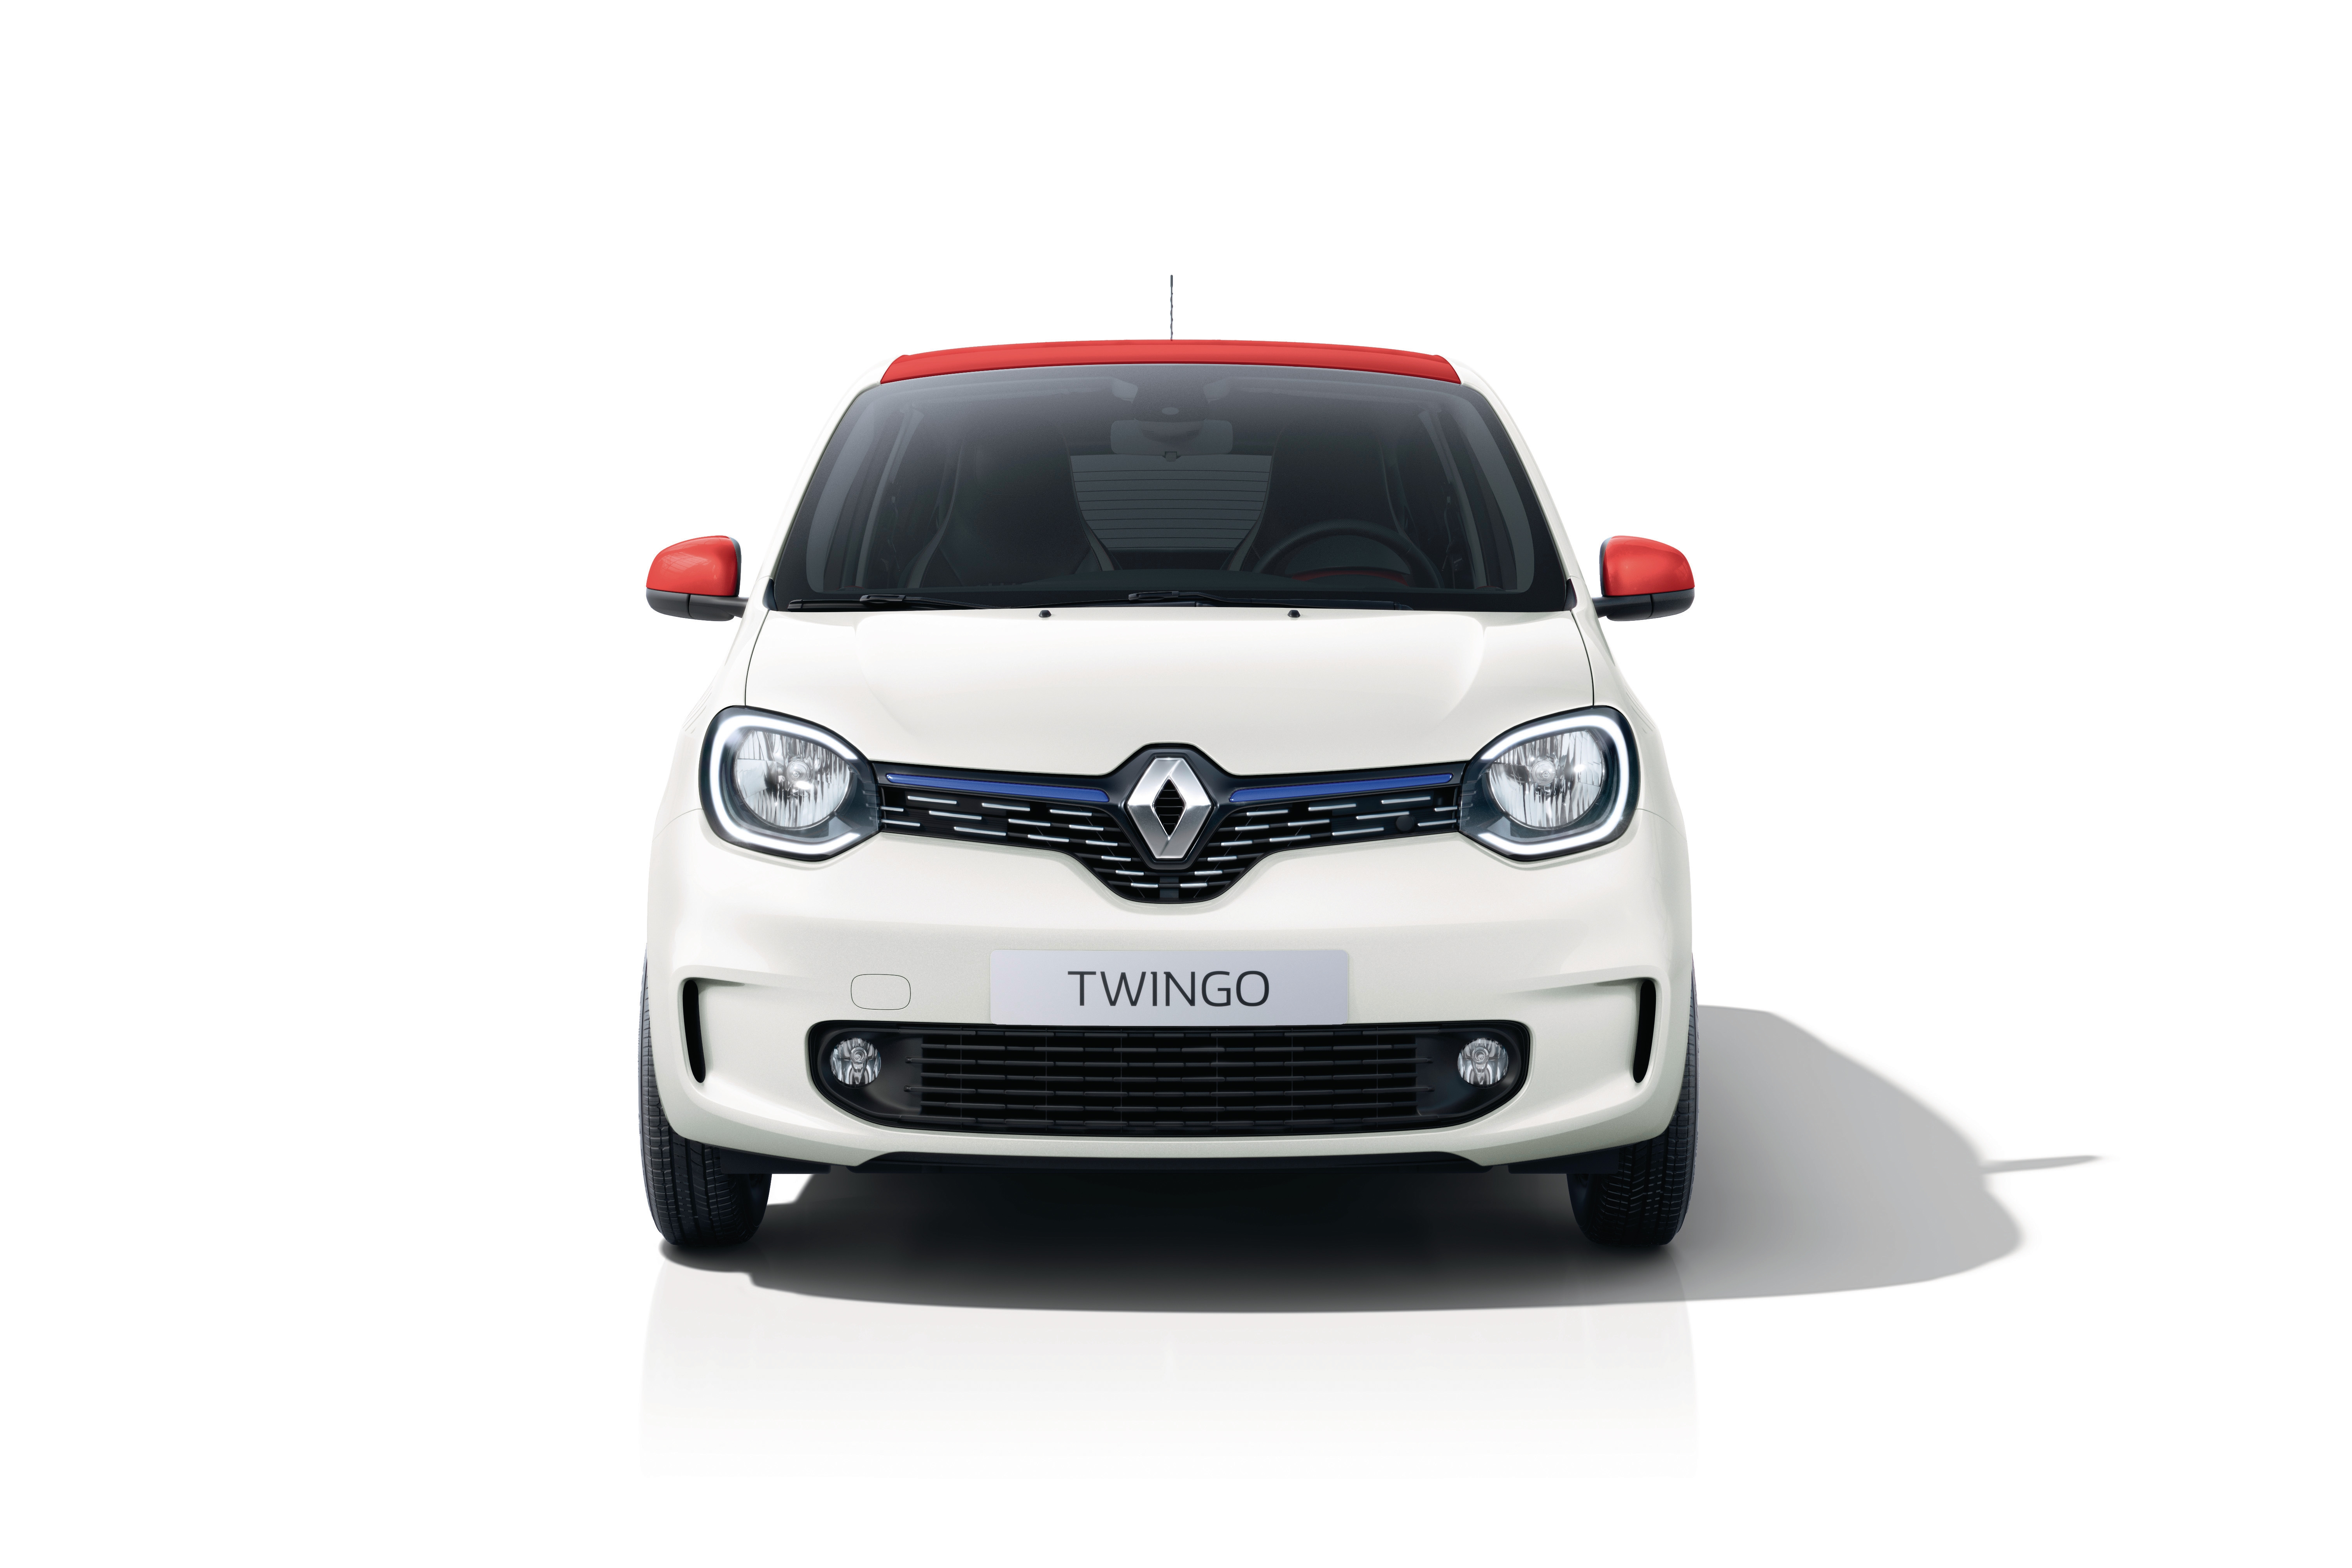 Renault Twingo hd photo